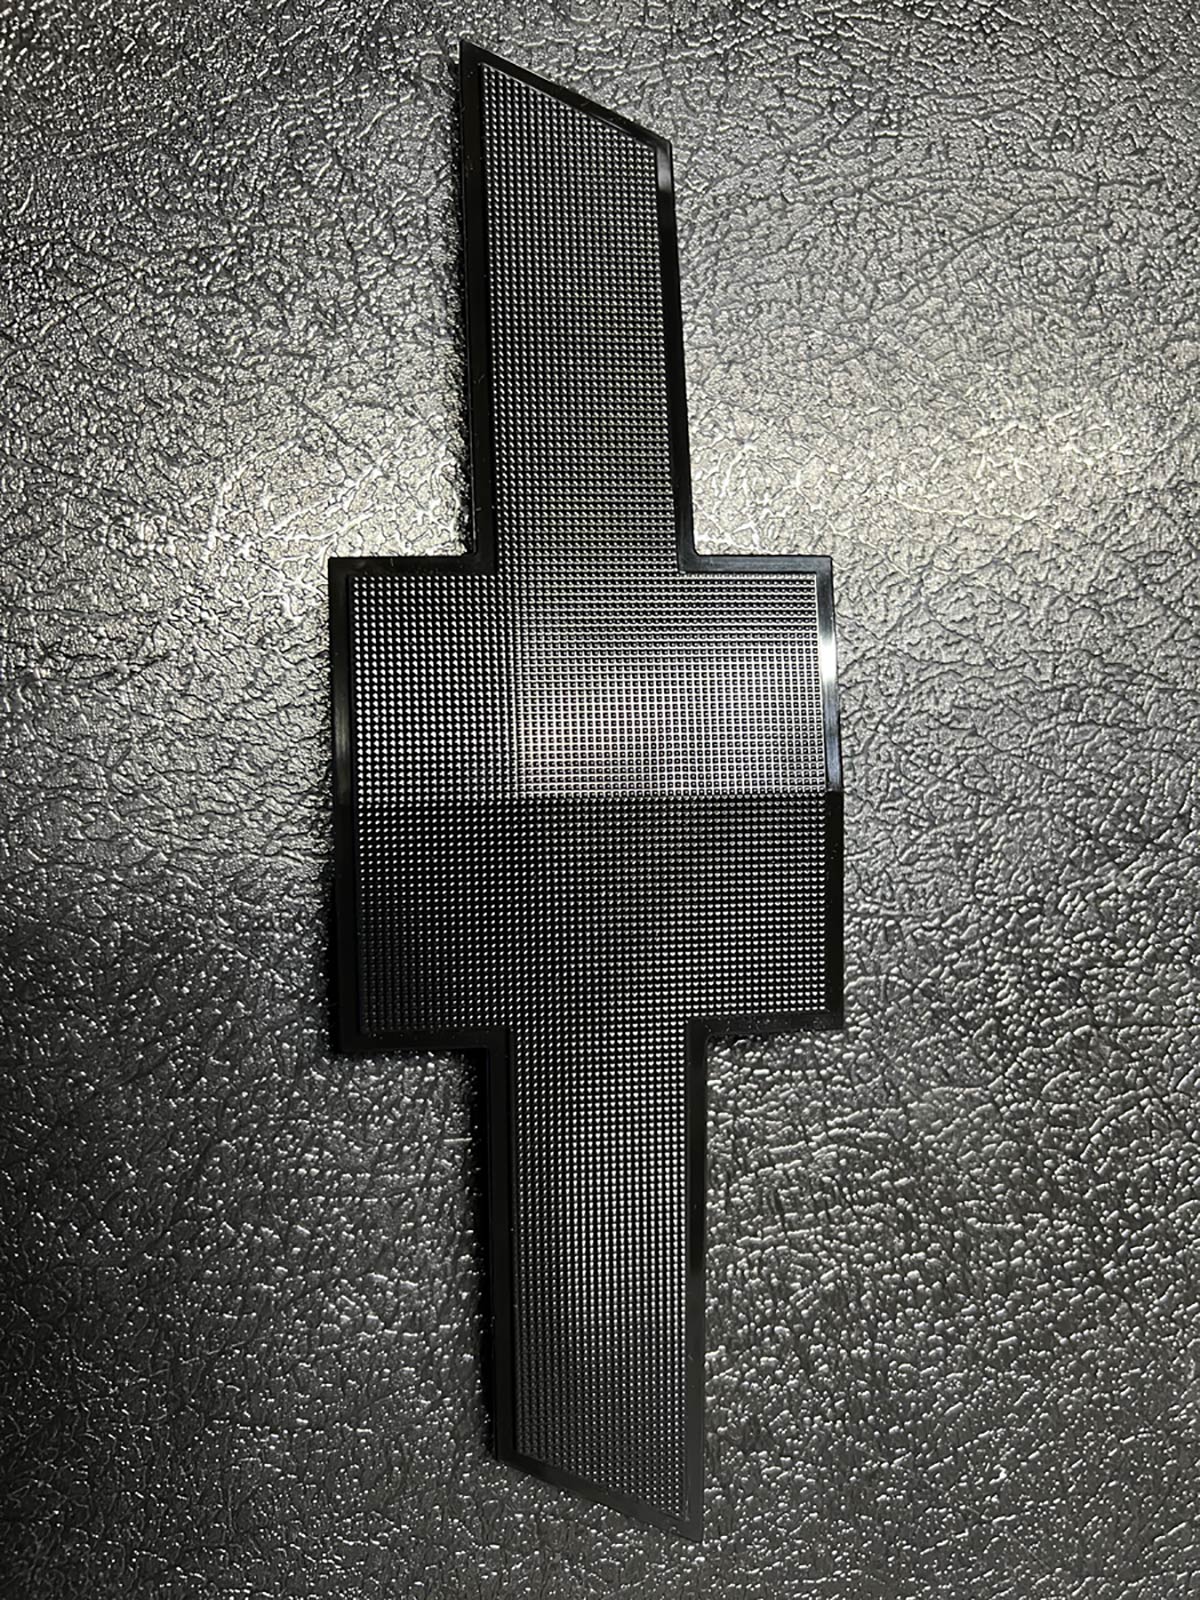 automotive part - black plastic injection molded chevy emblem